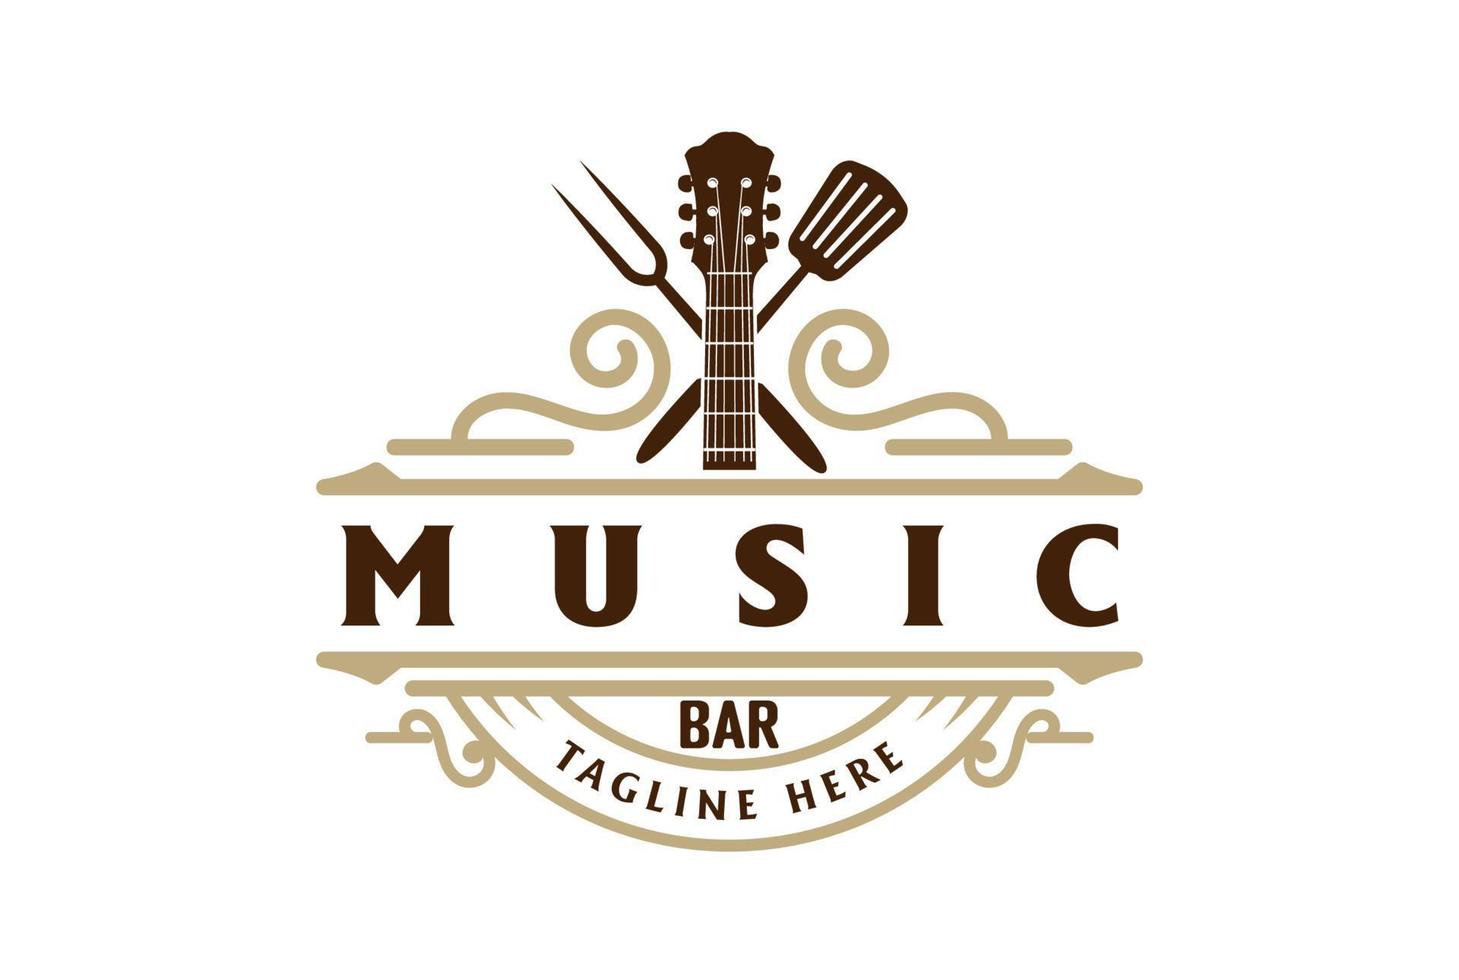 guitarra retro vintage con tenedor cruzado y espátula para bar cafe music badge emblem logo design vector